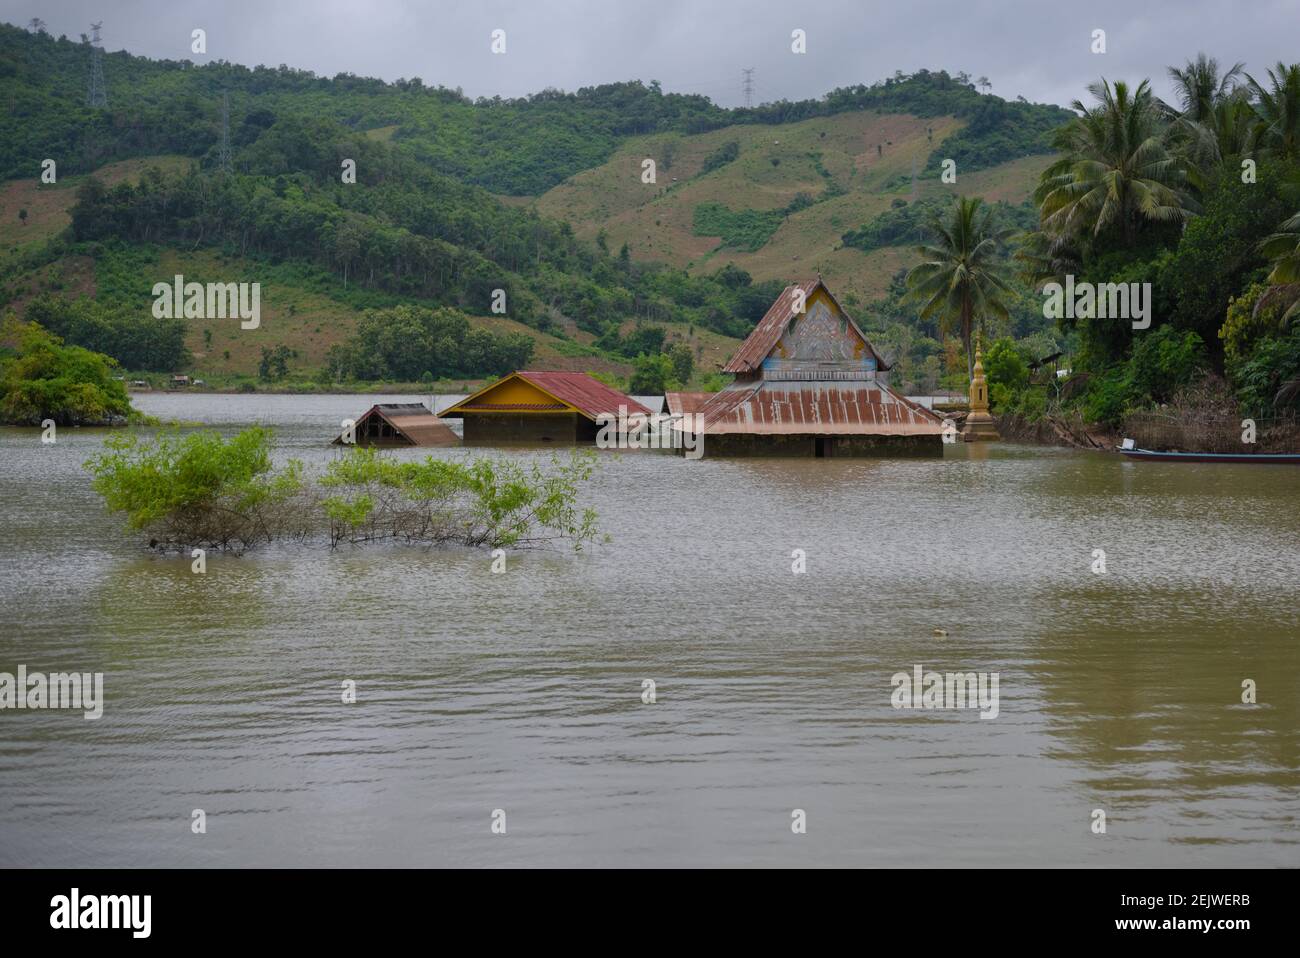 Lat Tha Hae Tempel, halb in Wasser getaucht, verursacht durch den Bau eines neuen Staudamms am Nam Ou Fluss in Nord-Laos. Stockfoto